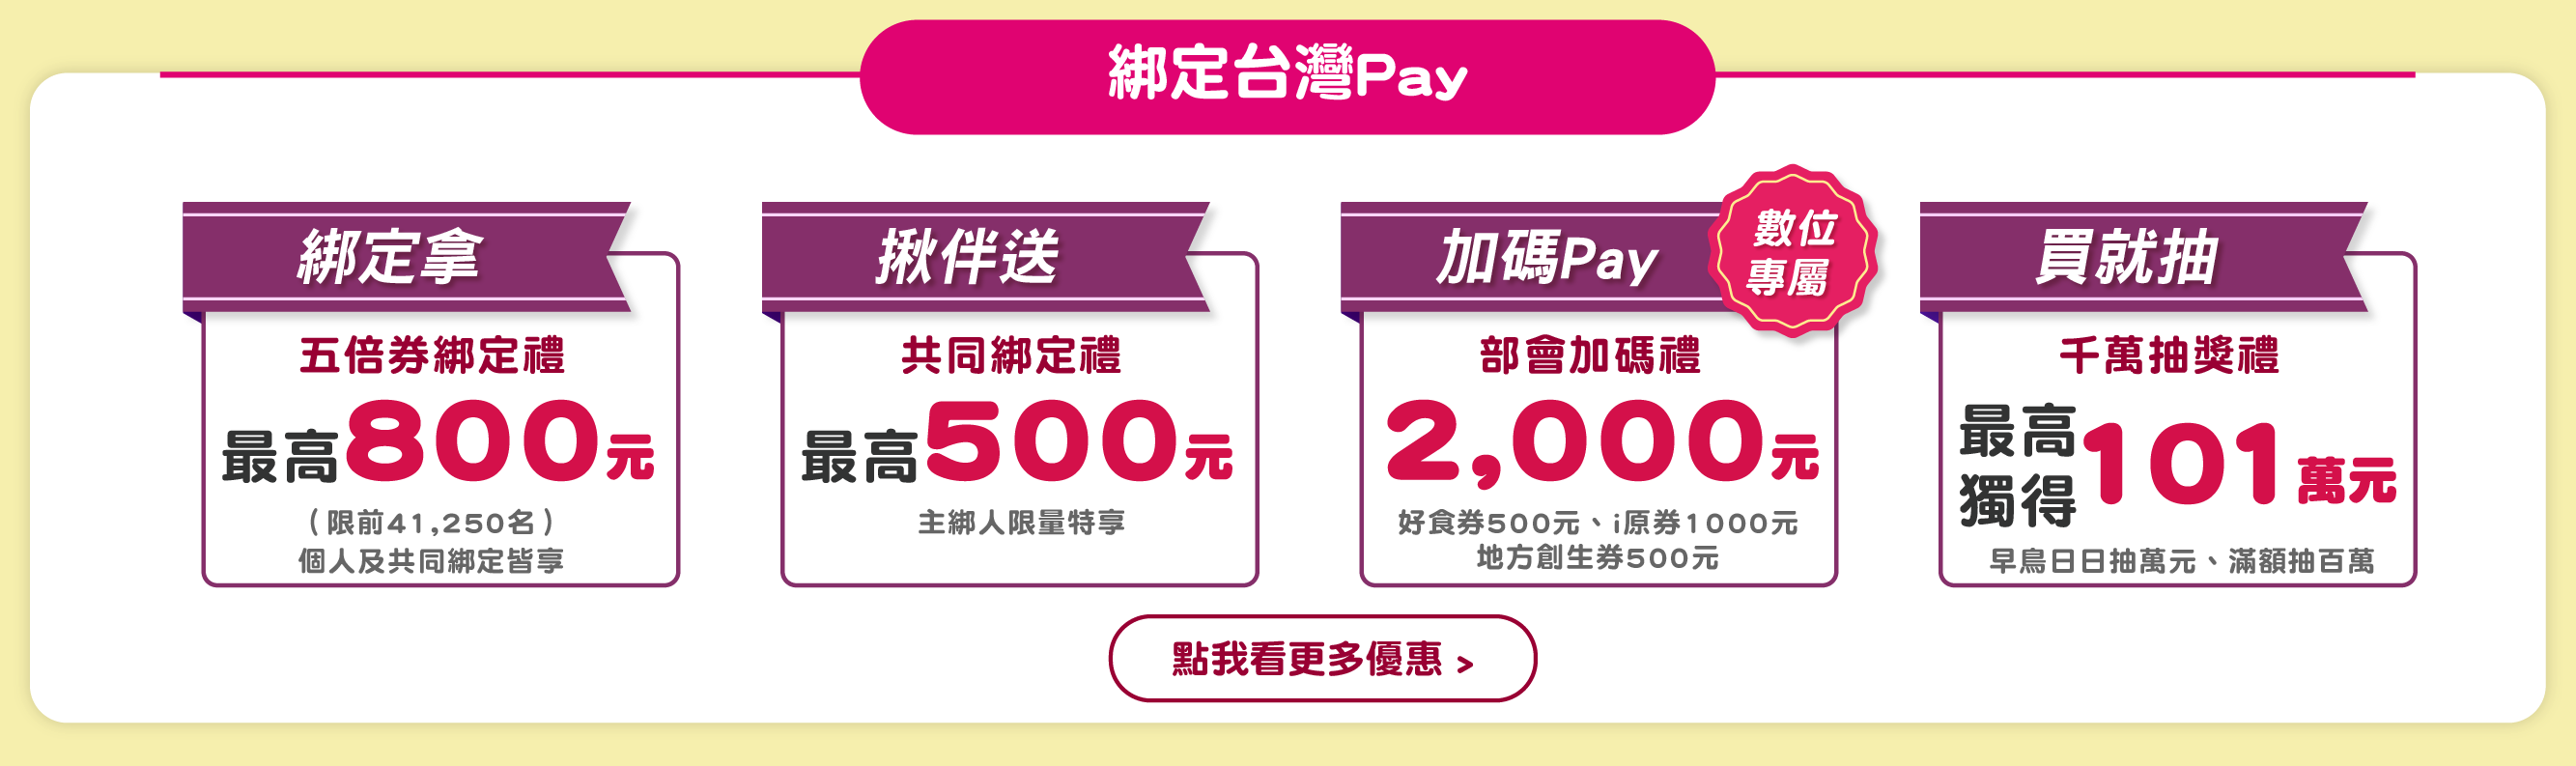 台灣Pay,五倍券,振興五倍券,8大加碼券